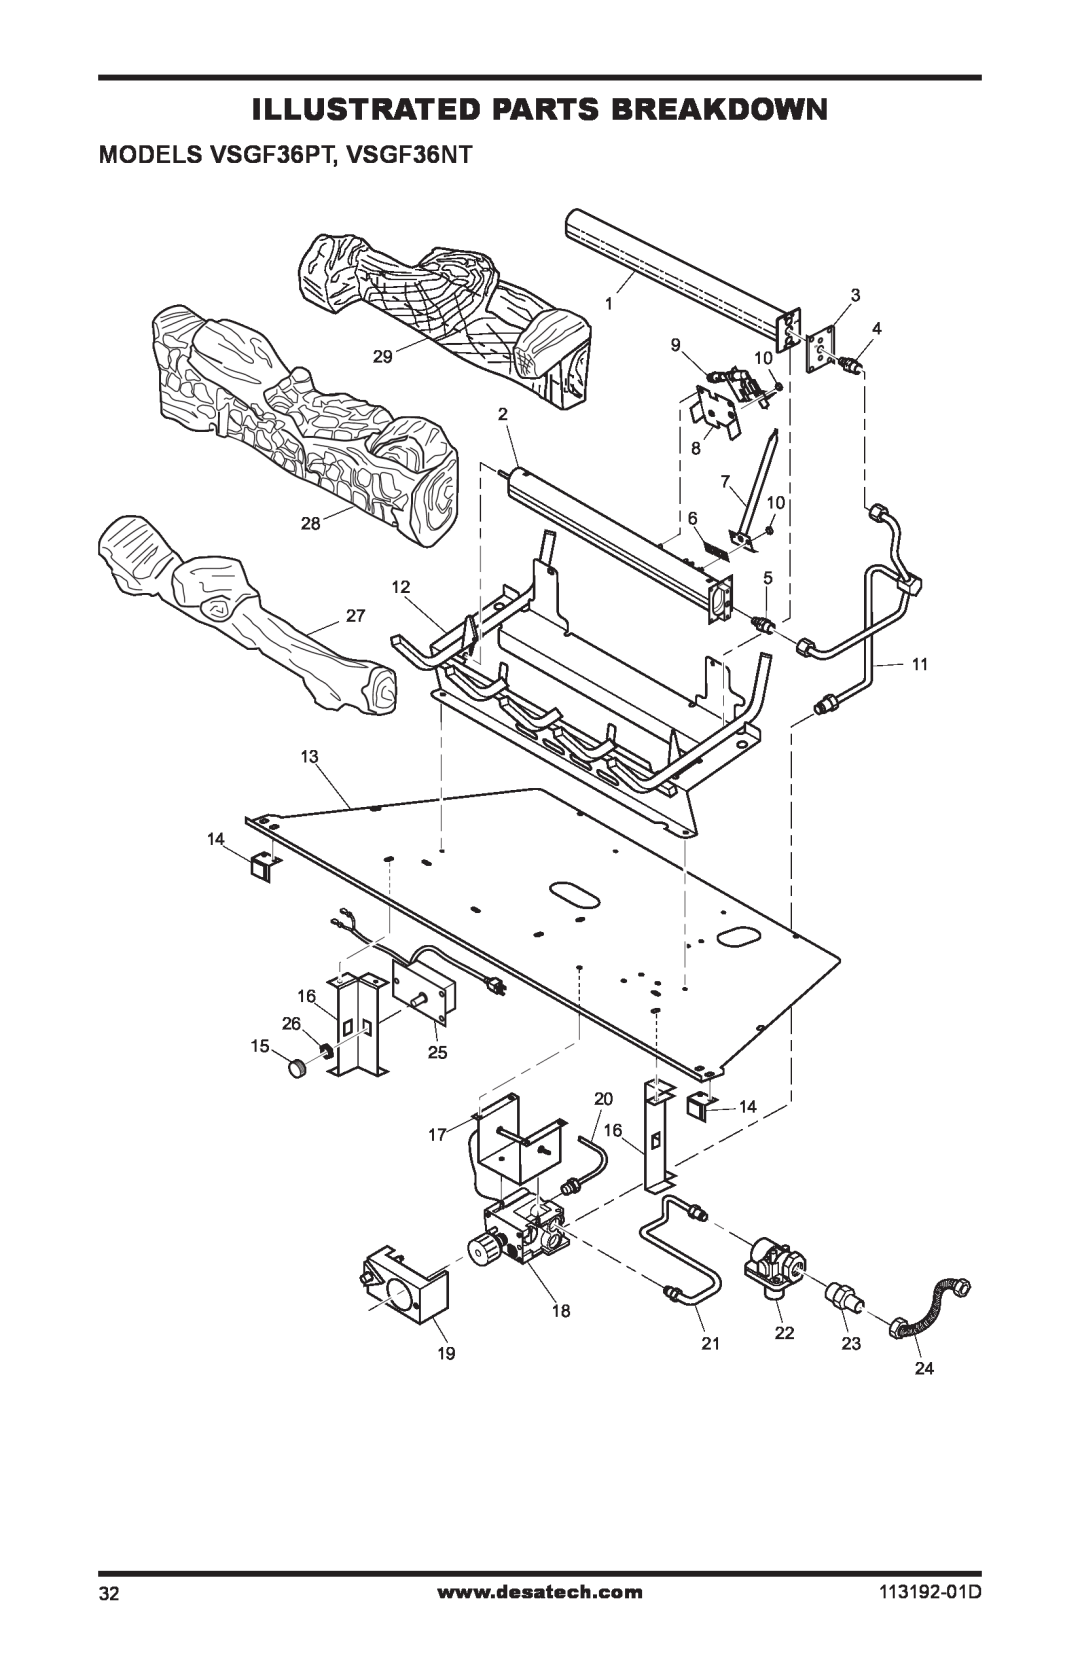 Desa VSGF36NR, VSGF36PR installation manual Illustrated Parts Breakdown, MODELS VSGF36PT, VSGF36NT, 113192-01D 